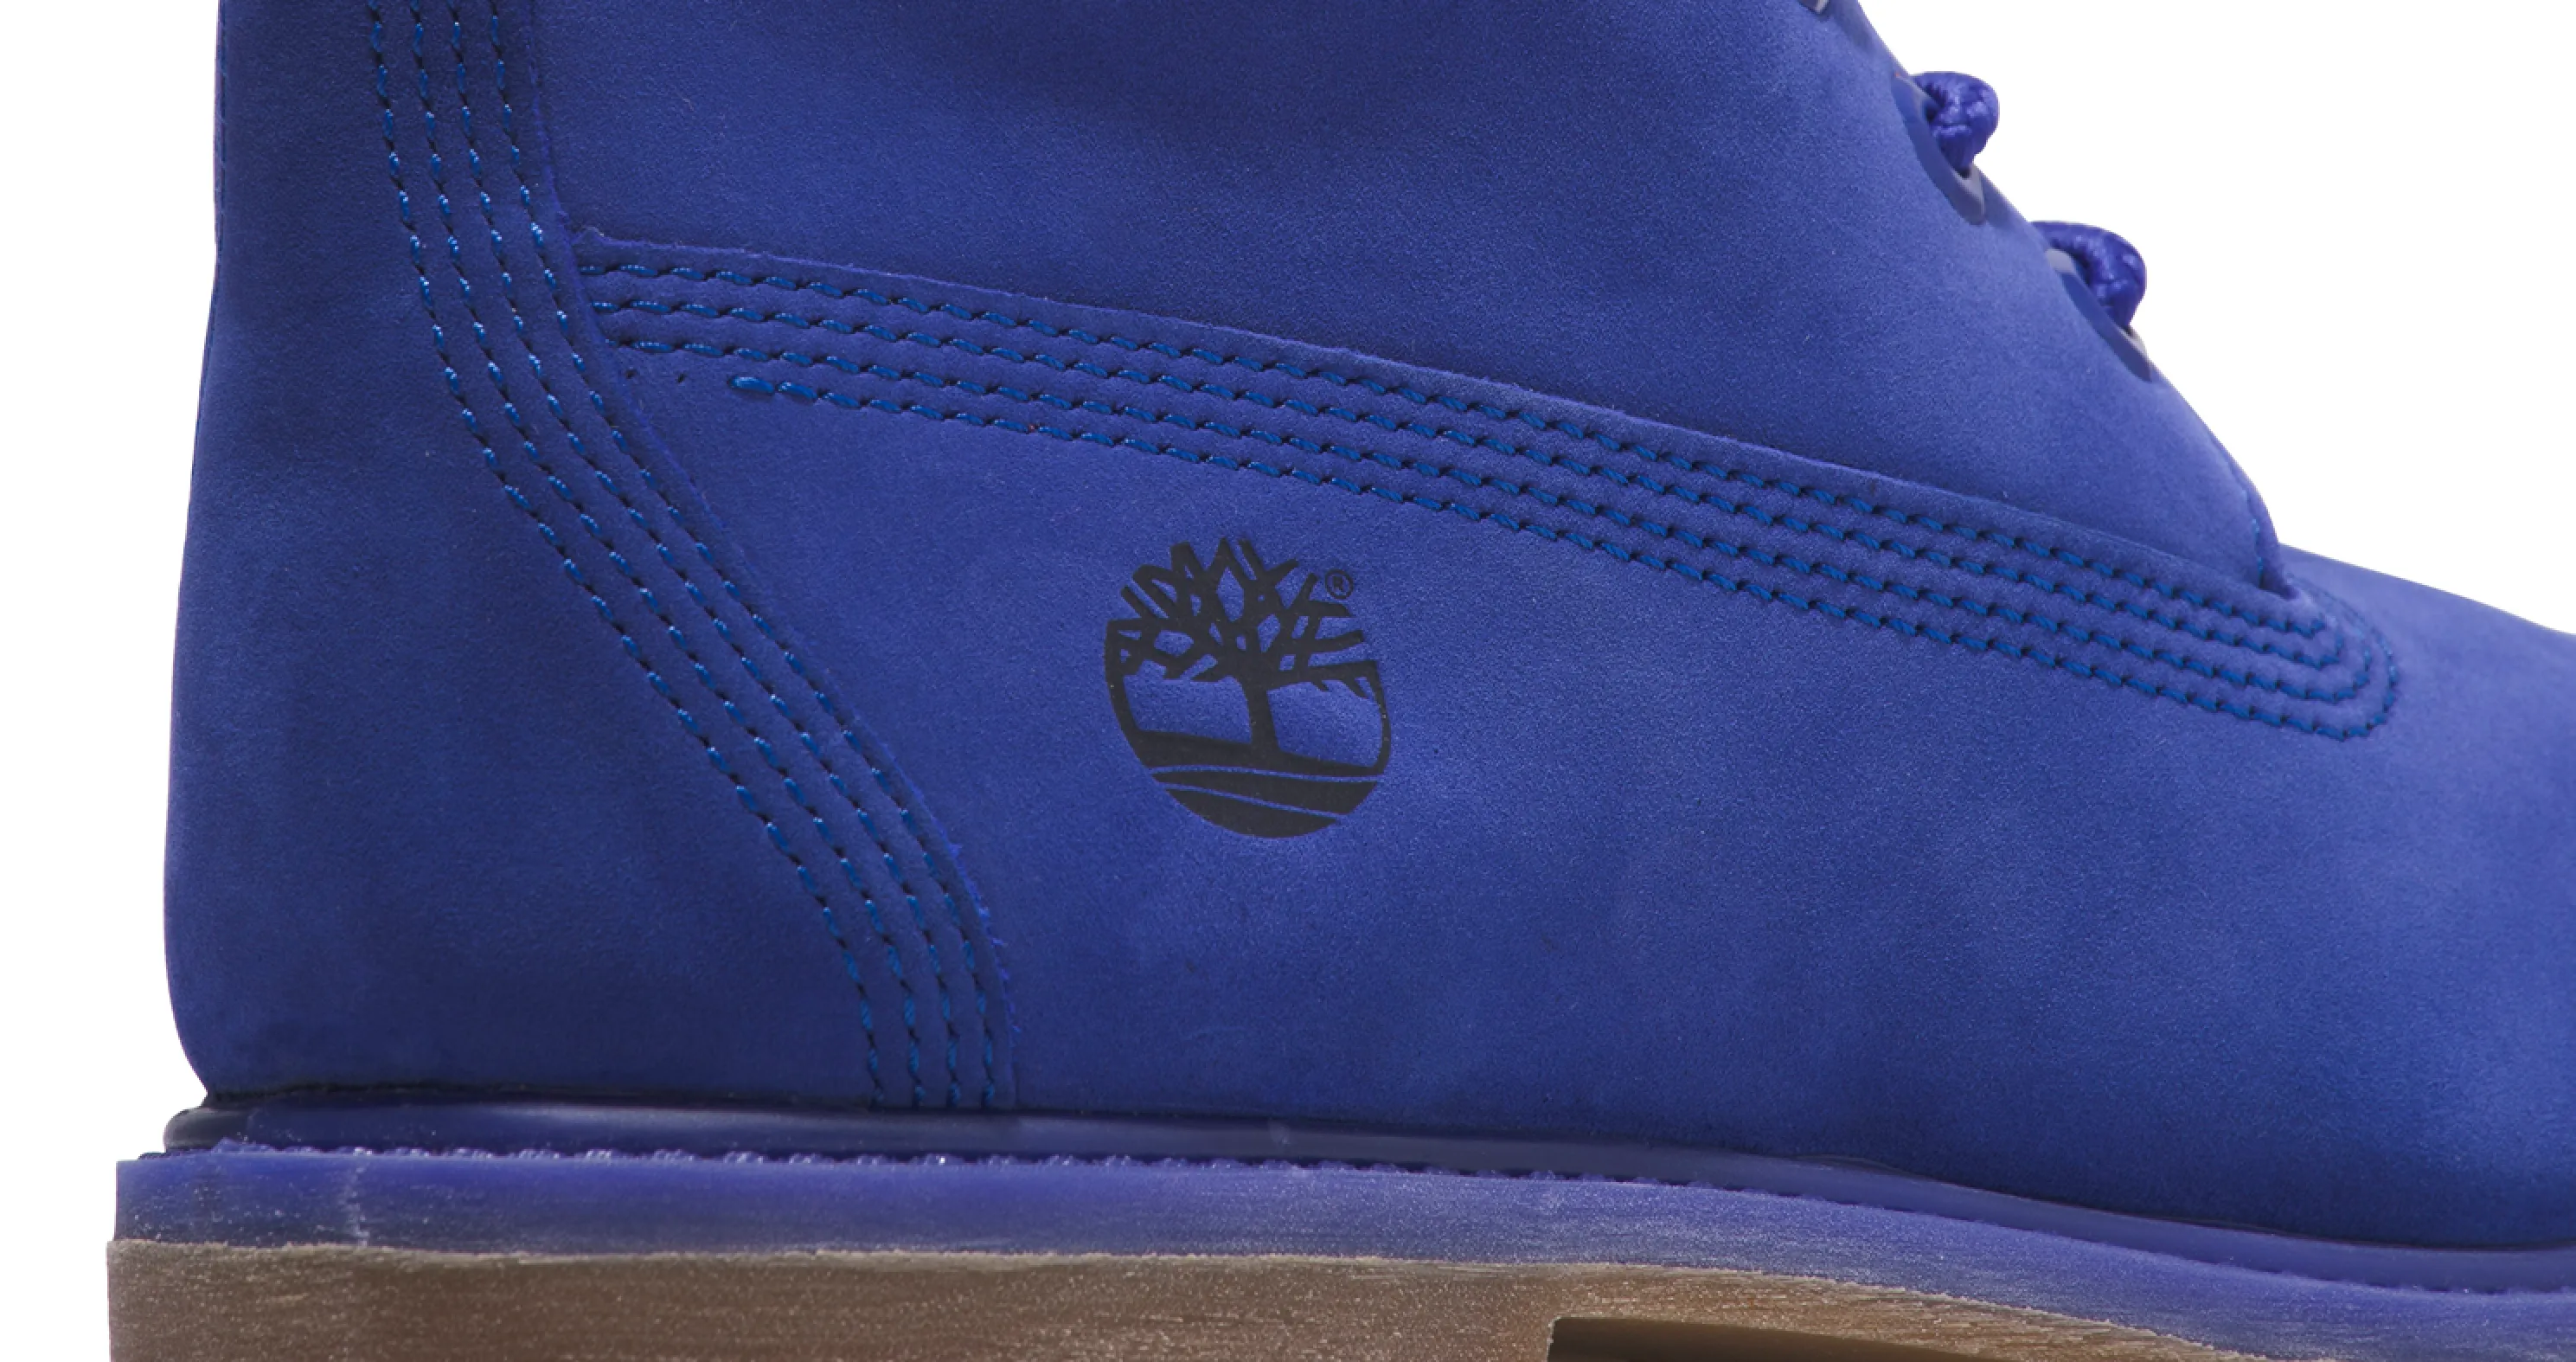 Timberland viert 50ste verjaardag met kleurrijke Premium 6-Inch Boot collectie